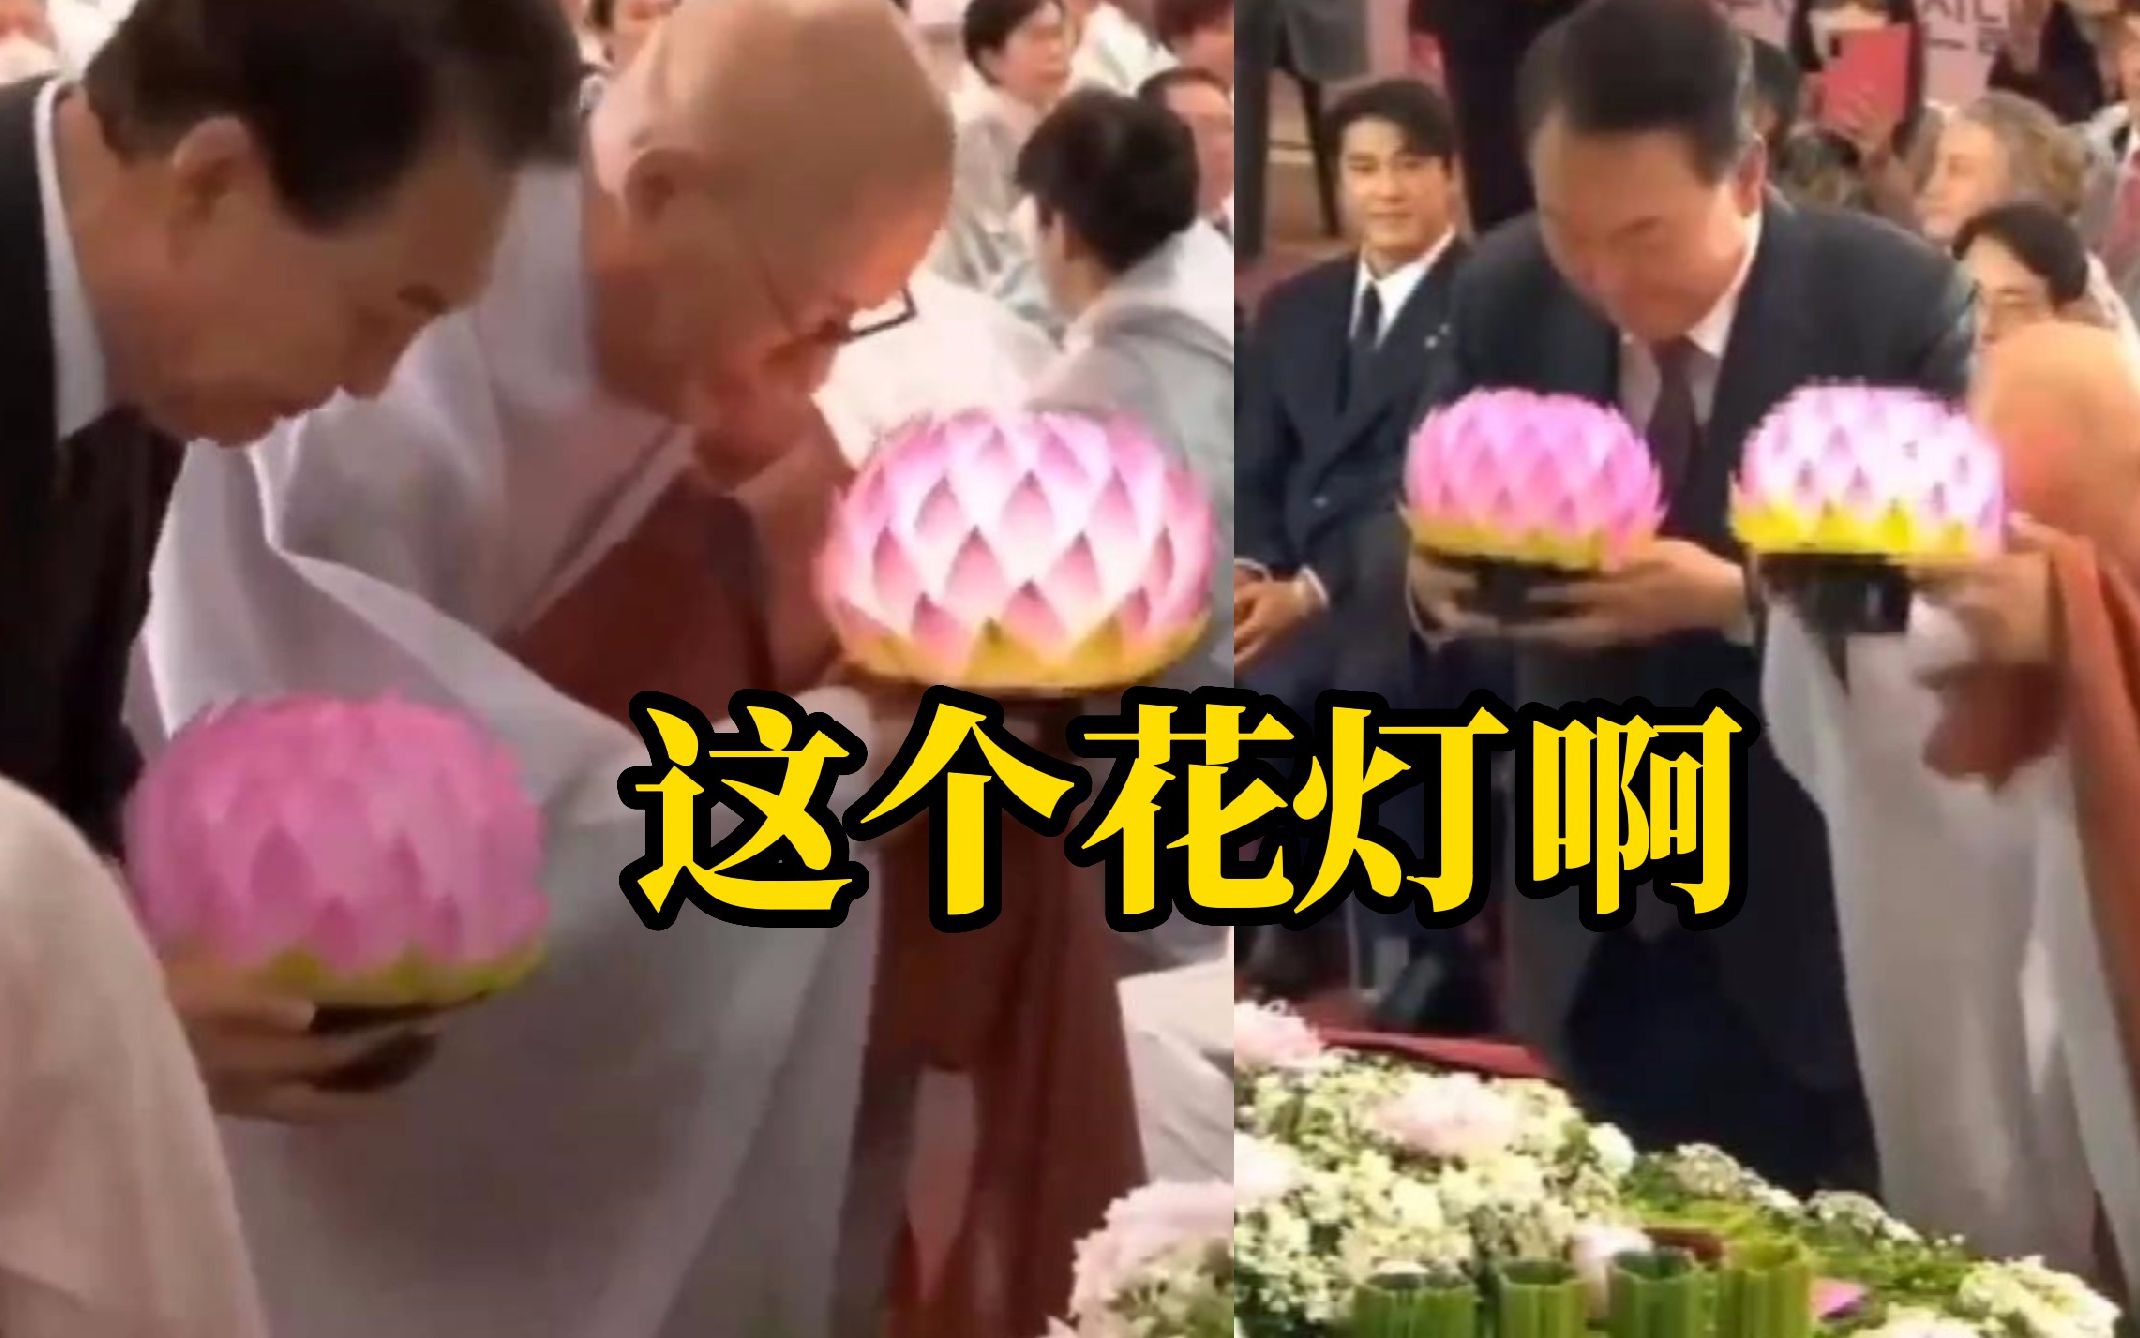 韩国总统尹锡悦出席佛事活动 花灯一到他手上就熄灭